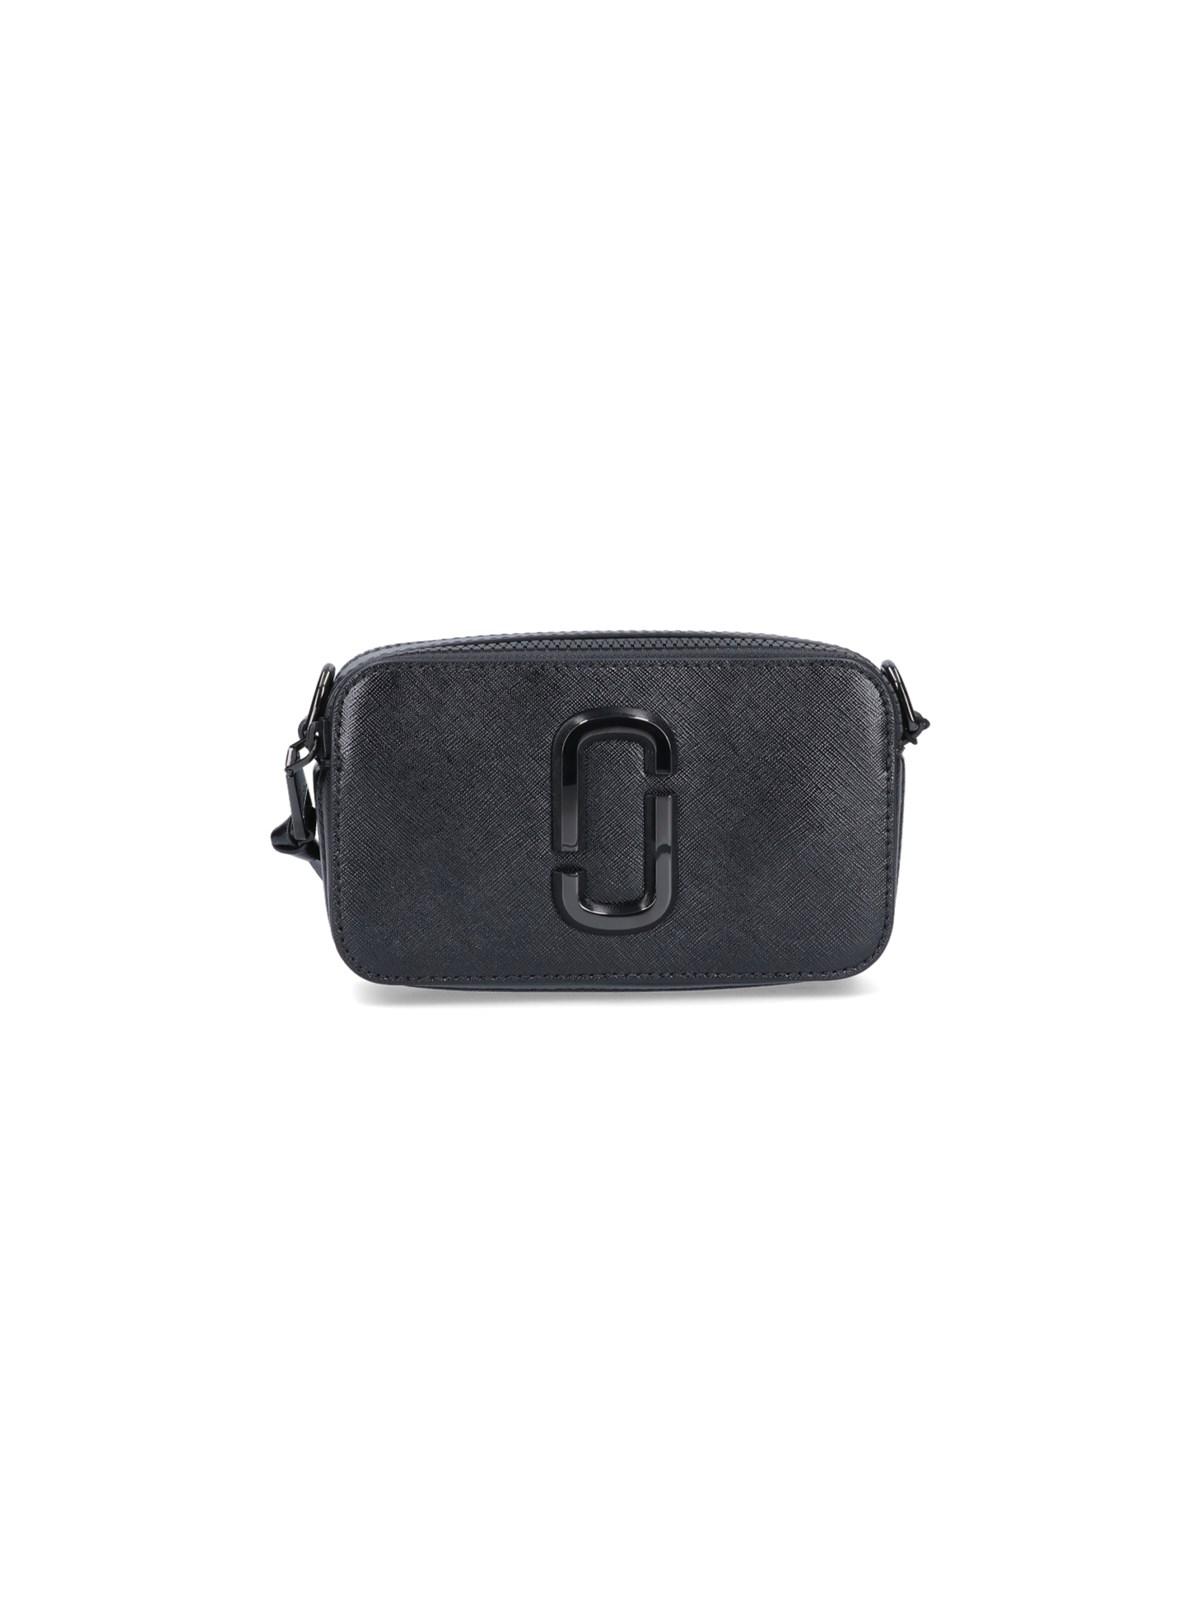 Marc Jacobs Black 'The Snapshot' DTM Shoulder Bag